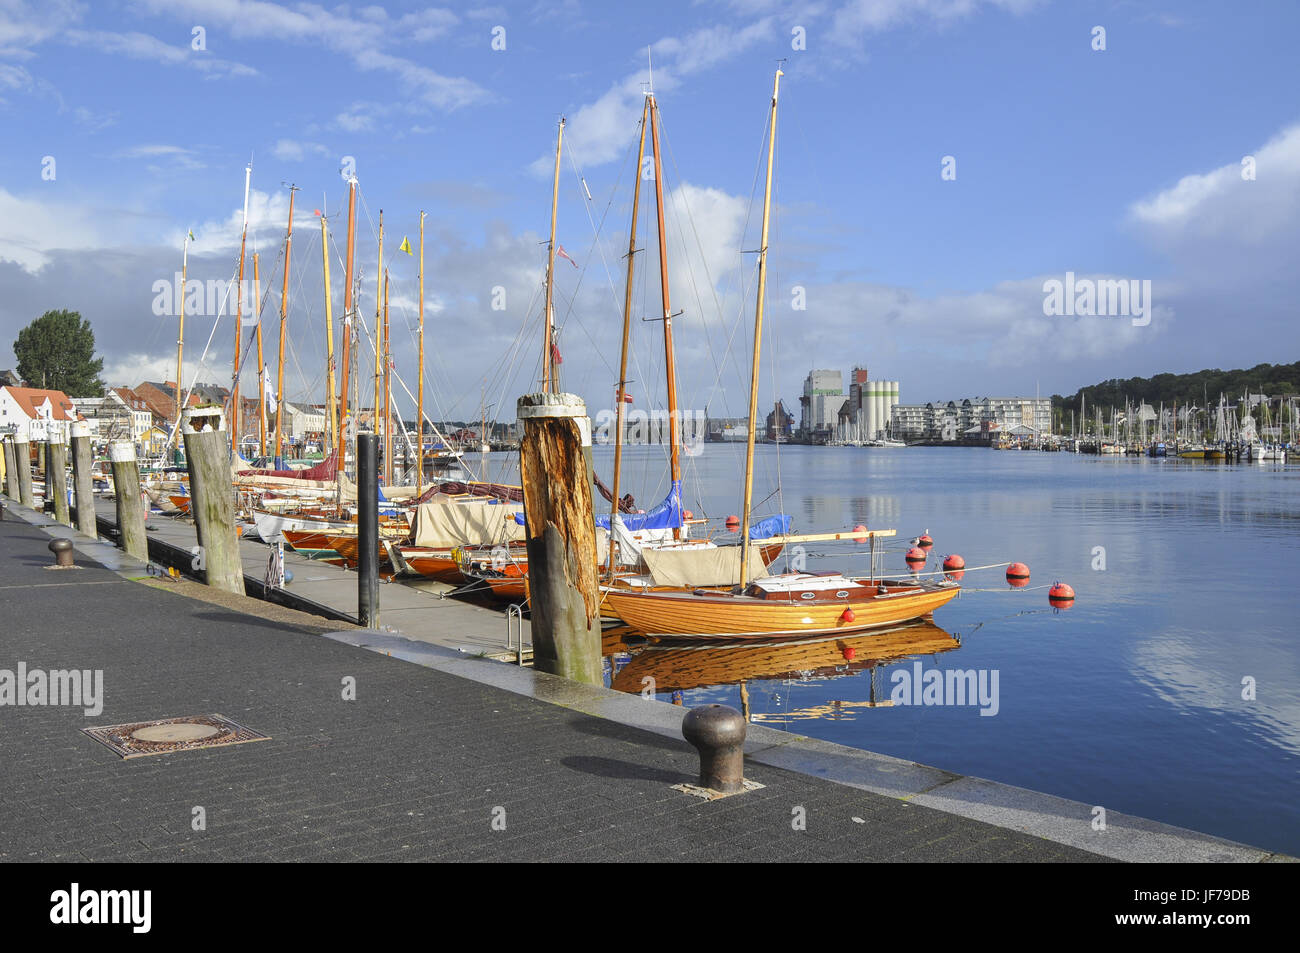 Port of Flensburg, Germany Stock Photo